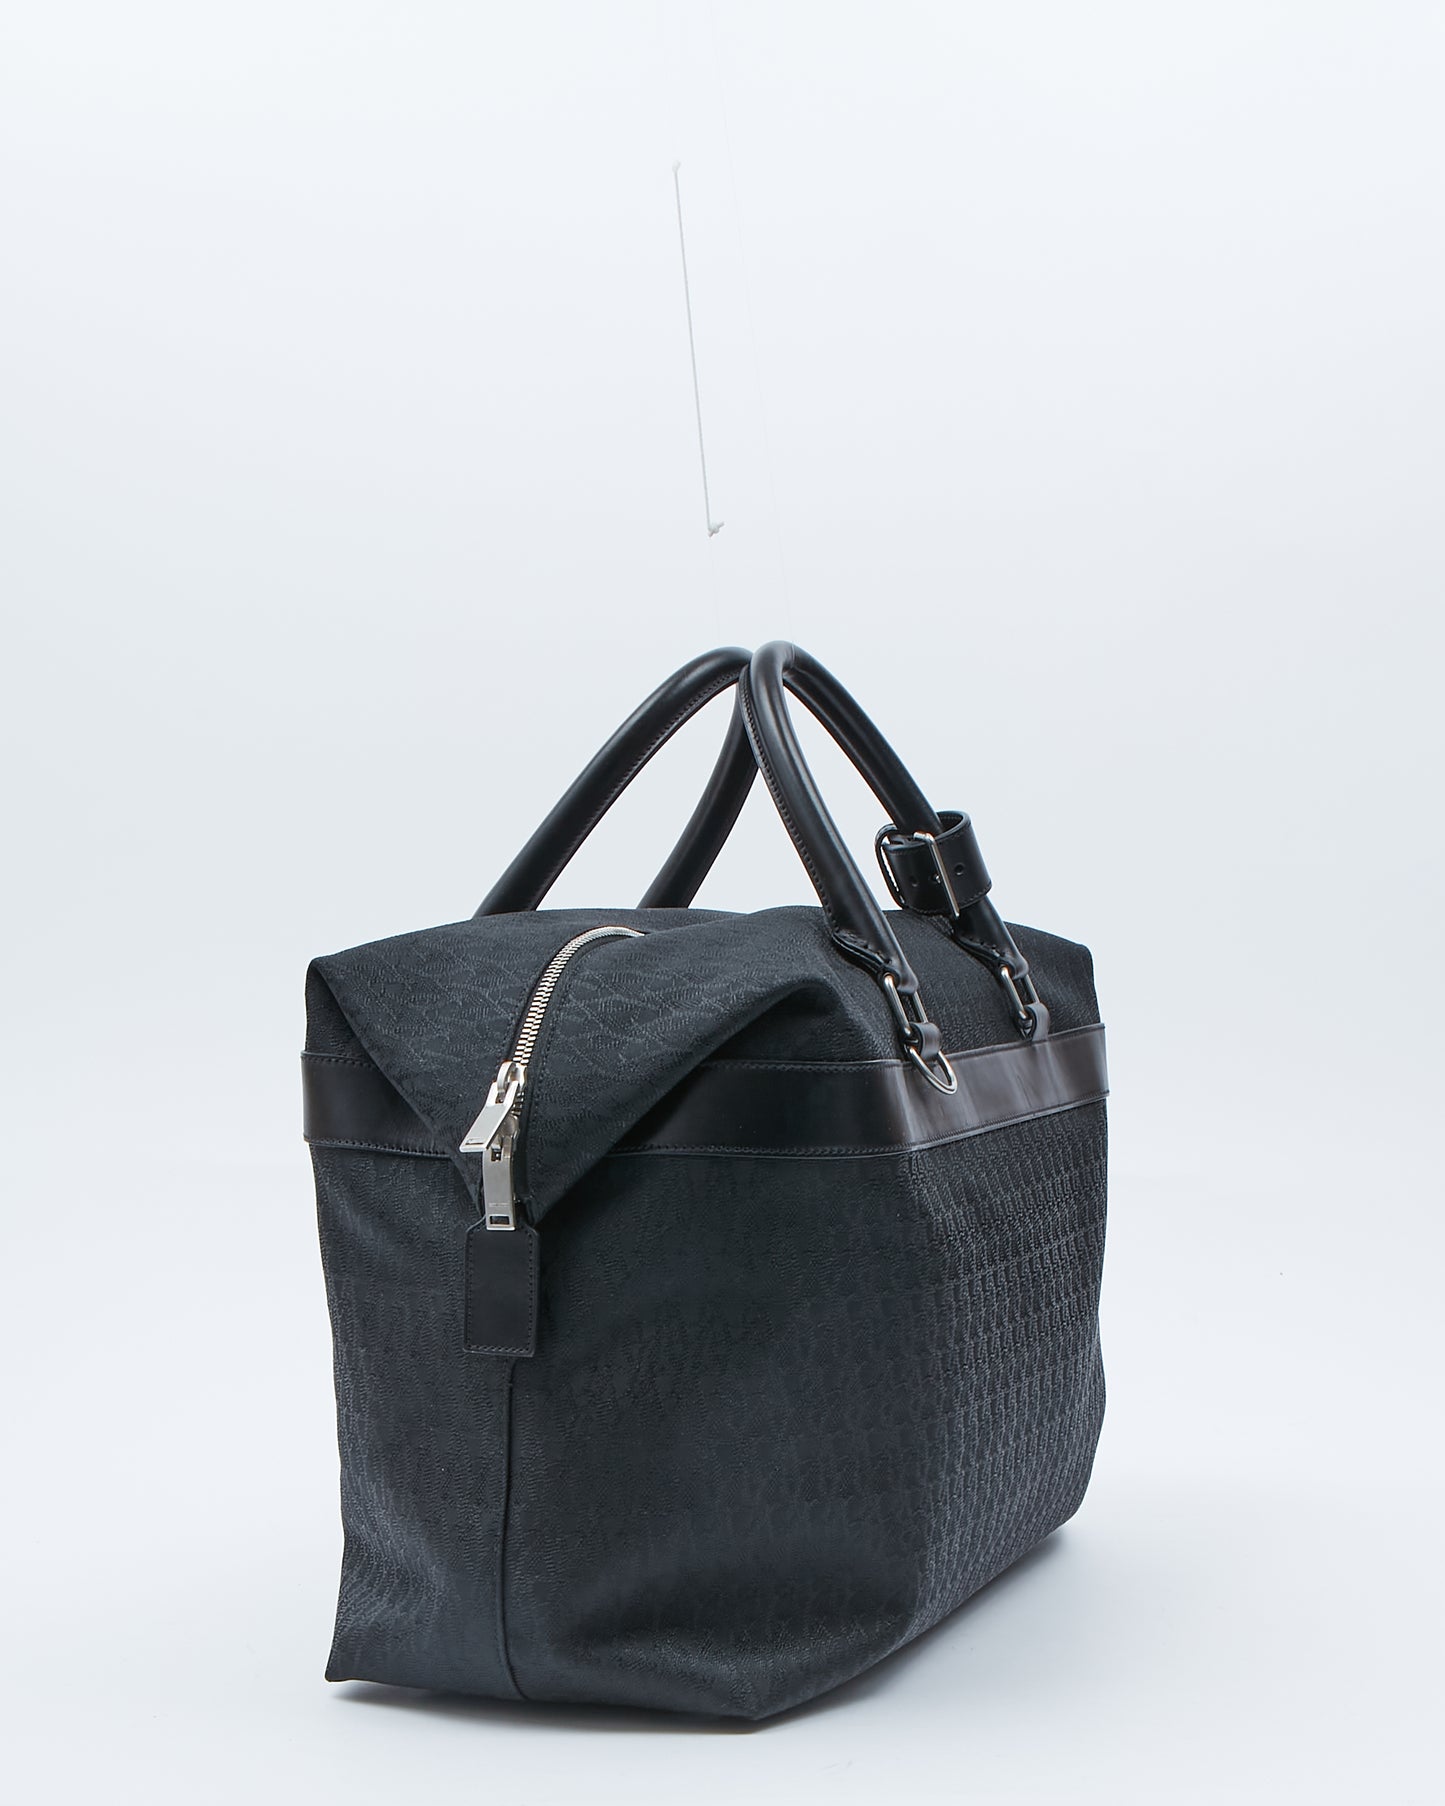 Saint Laurent Monogram Canvas & Leather Travel Duffle Bag